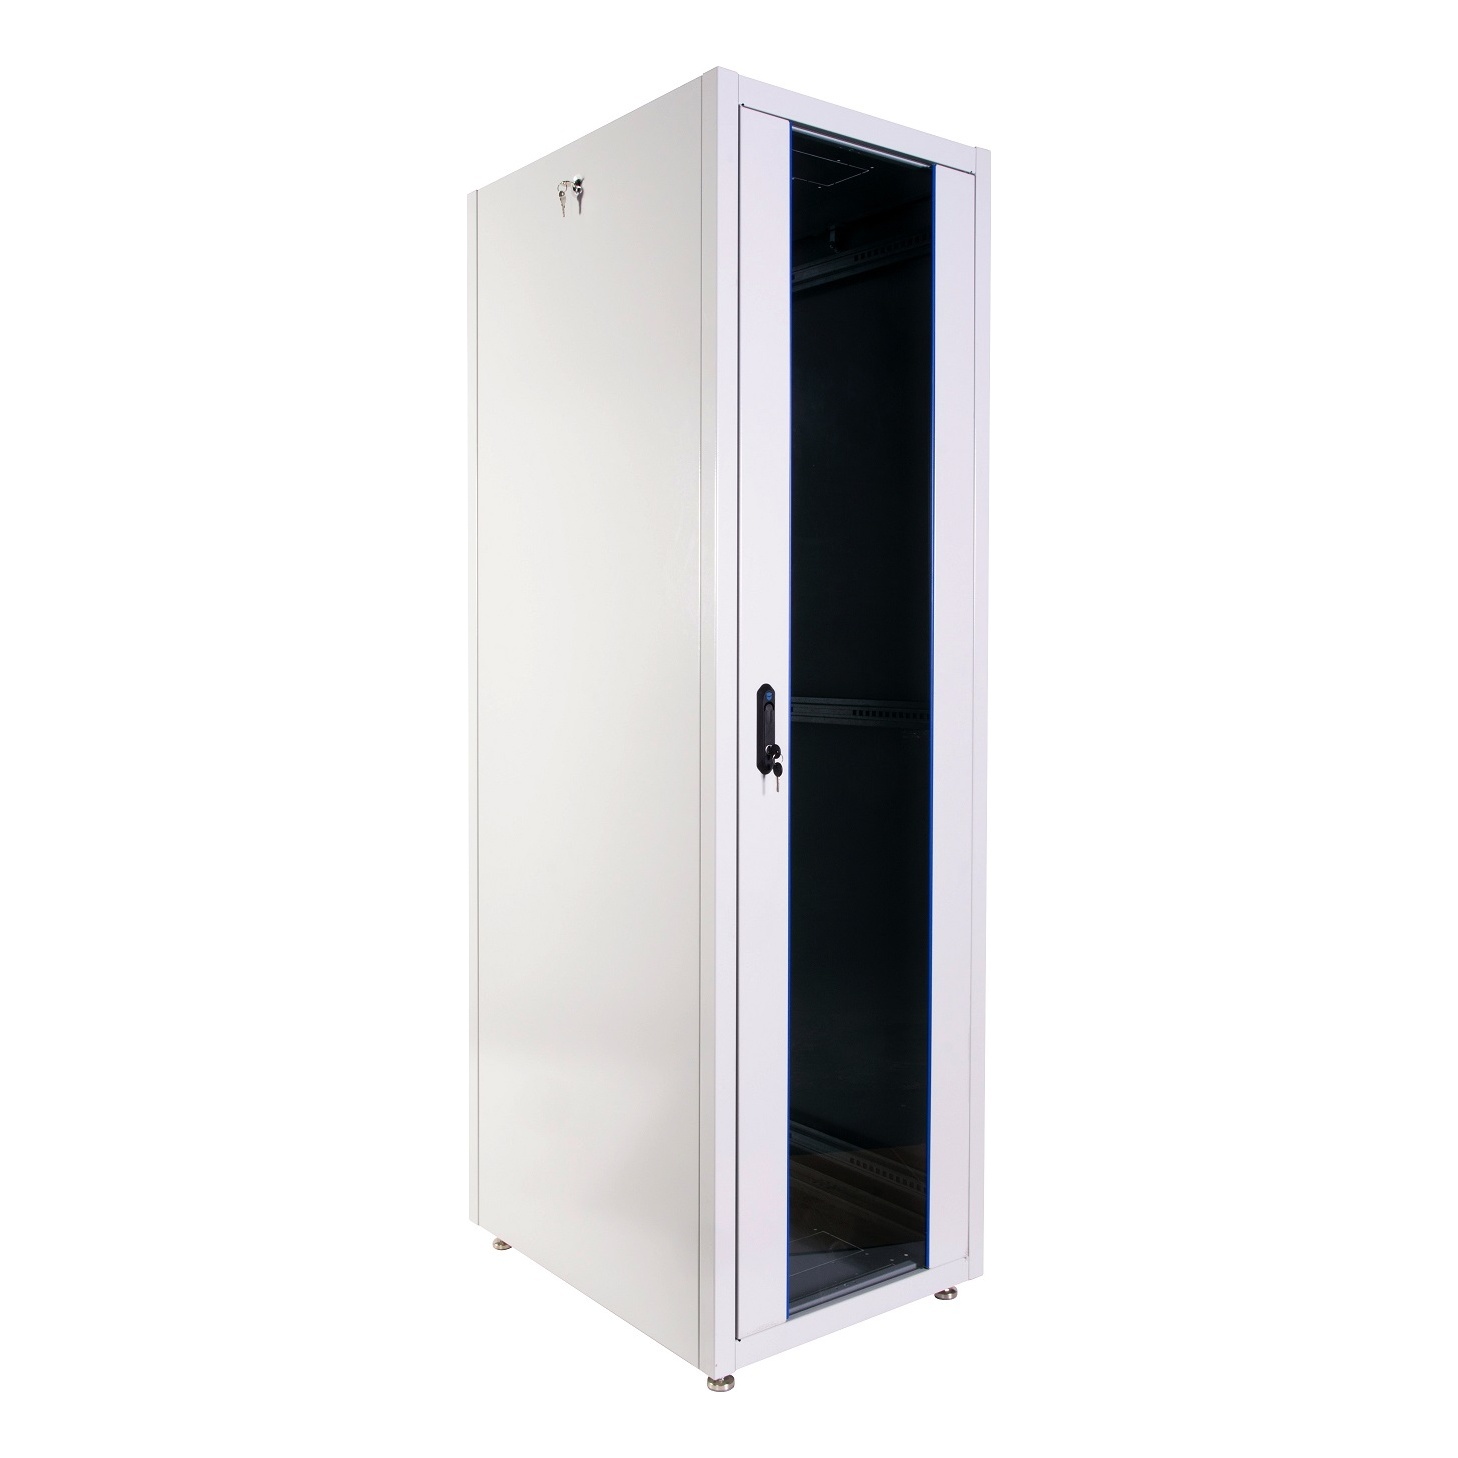 ЦМО ШТК-Э-48.6.8-13АА Шкаф телекоммуникационный напольный ЭКОНОМ 48U (600 × 800) дверь стекло, дверь металл